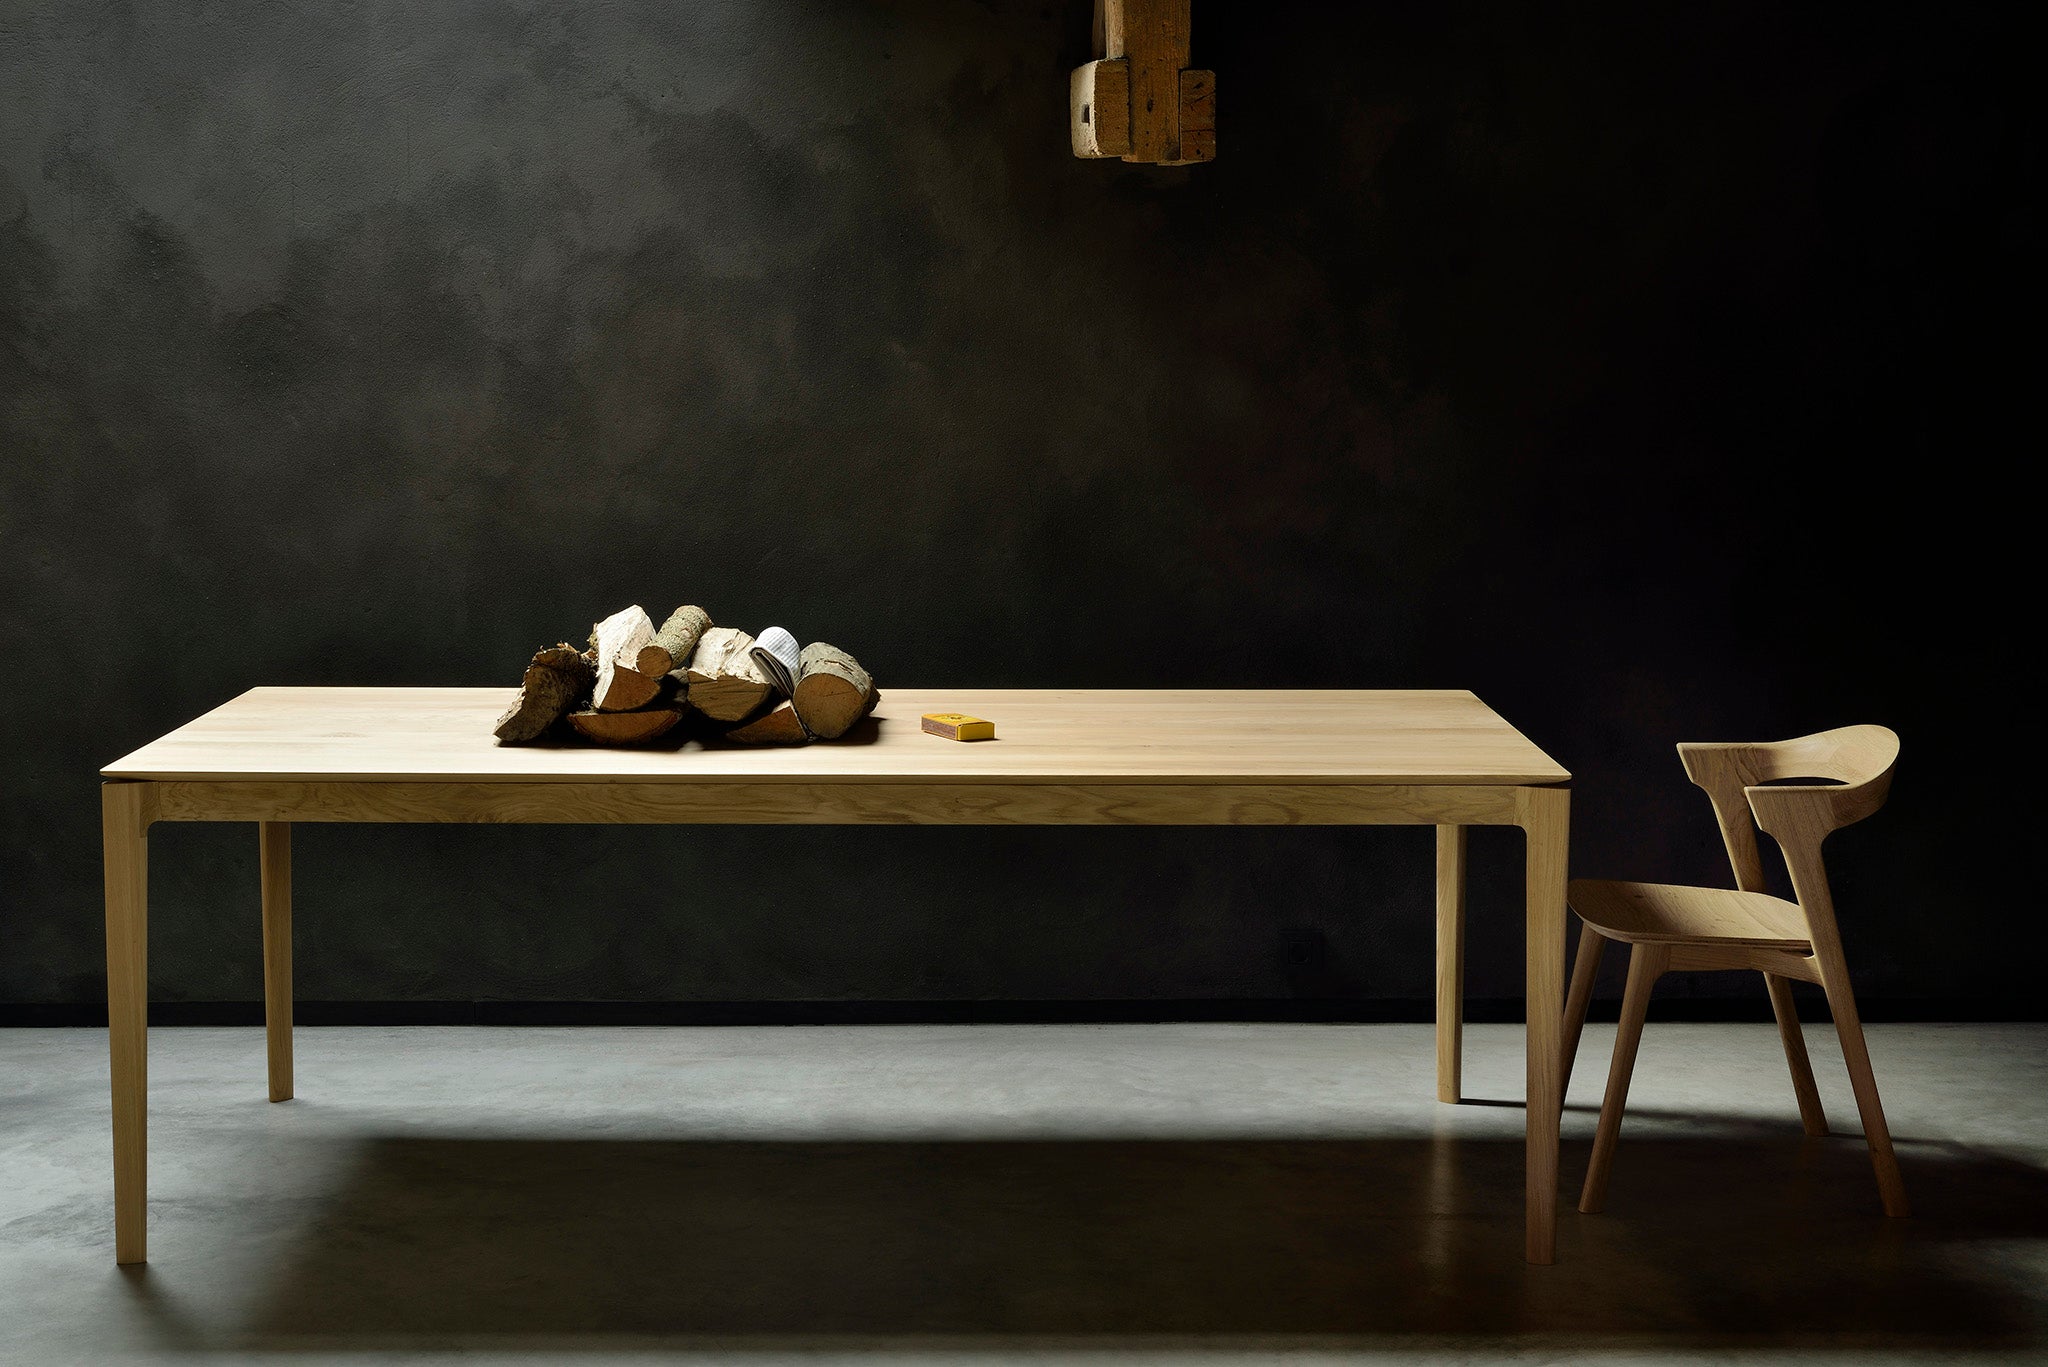 比利時原裝進口實木傢俬 - 餐桌系列 - Bok系列橡木餐桌